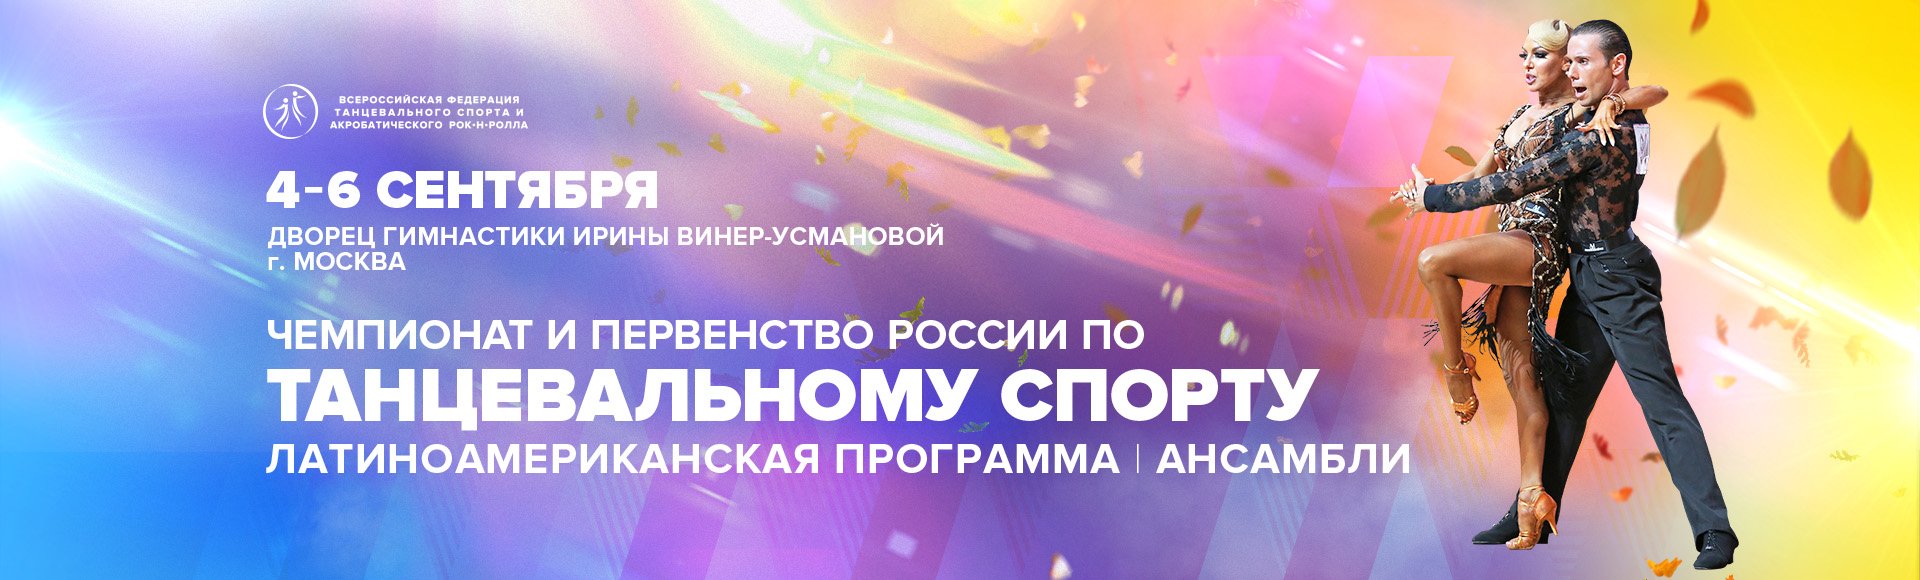 Поздравление спортсменам ФТС НСО с успешным выступлением на 3 блоке Чемпионатов и Первенств России.